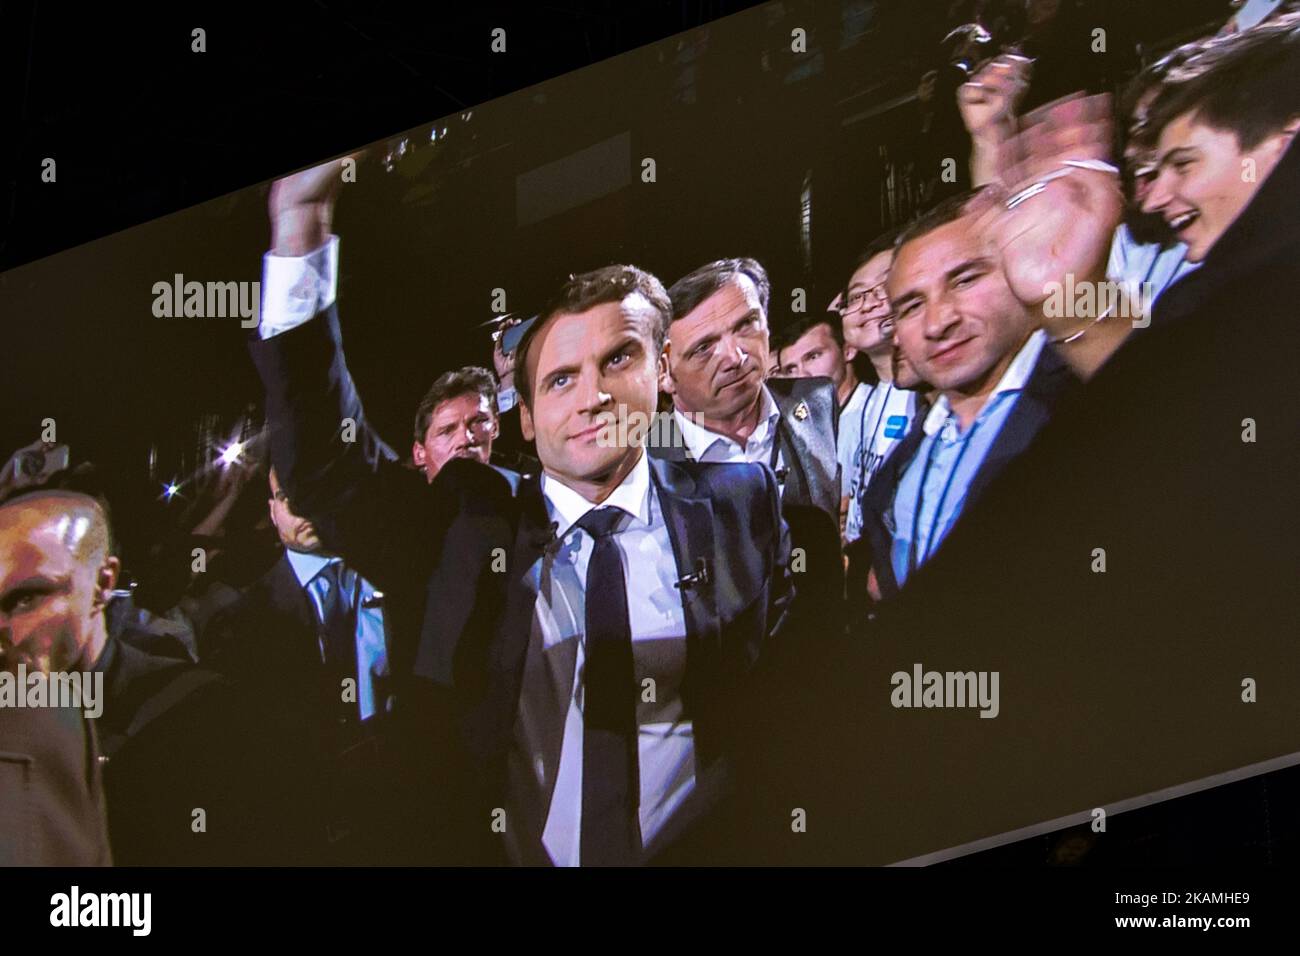 Candidato a las elecciones presidenciales francesas del centrista 'En Marche!' (En movimiento!) Emmanuel Macron, partido político, saluda a sus partidarios durante su mitin de campaña política el 17 de abril de 2017 en París, Francia. Macron es candidato a las elecciones presidenciales de Francia de 2017 y las encuestas predicen su presencia en la segunda vuelta de estas elecciones. (Foto de Julien Mattia/NurPhoto) *** Por favor use el crédito del campo de crédito *** Foto de stock